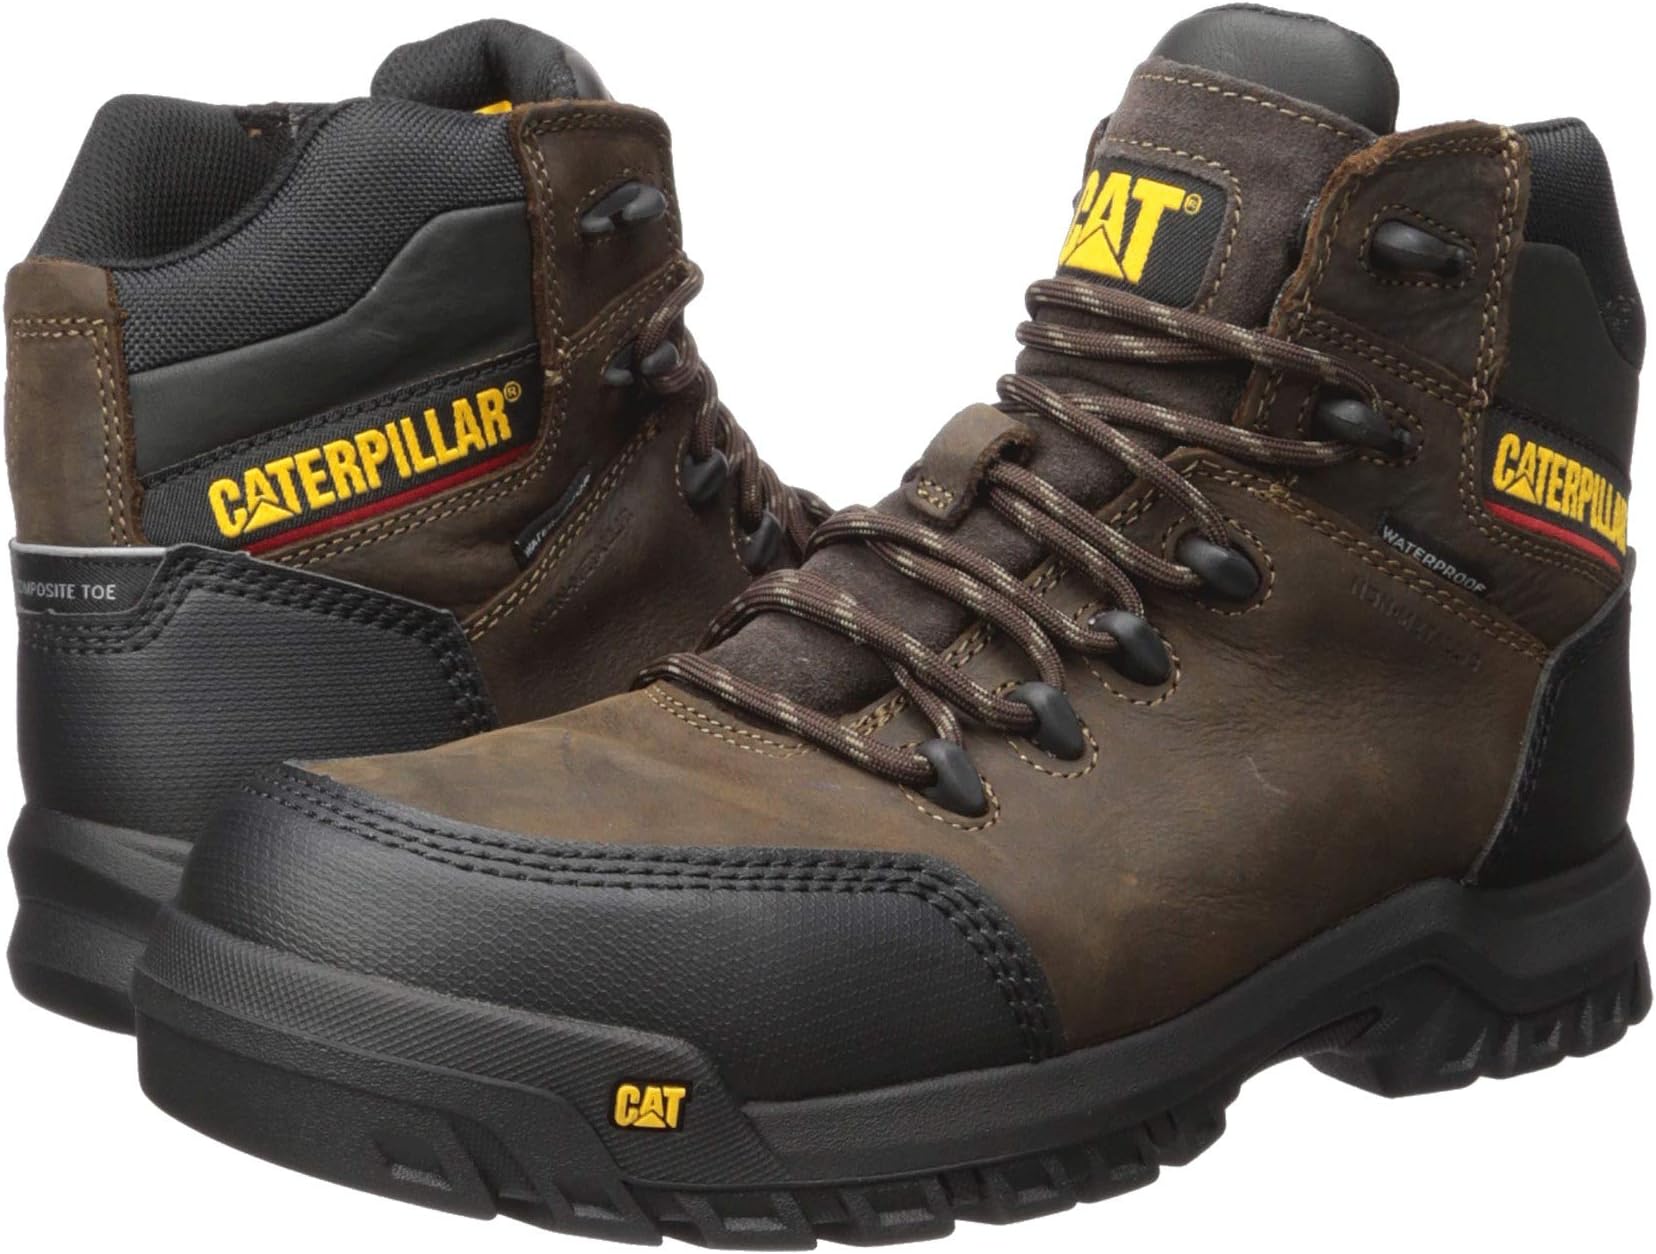 Рабочая обувь водонепроницаемая с композитным носком Resorption Waterproof Composite Toe Caterpillar, цвет Seal Brown Leather